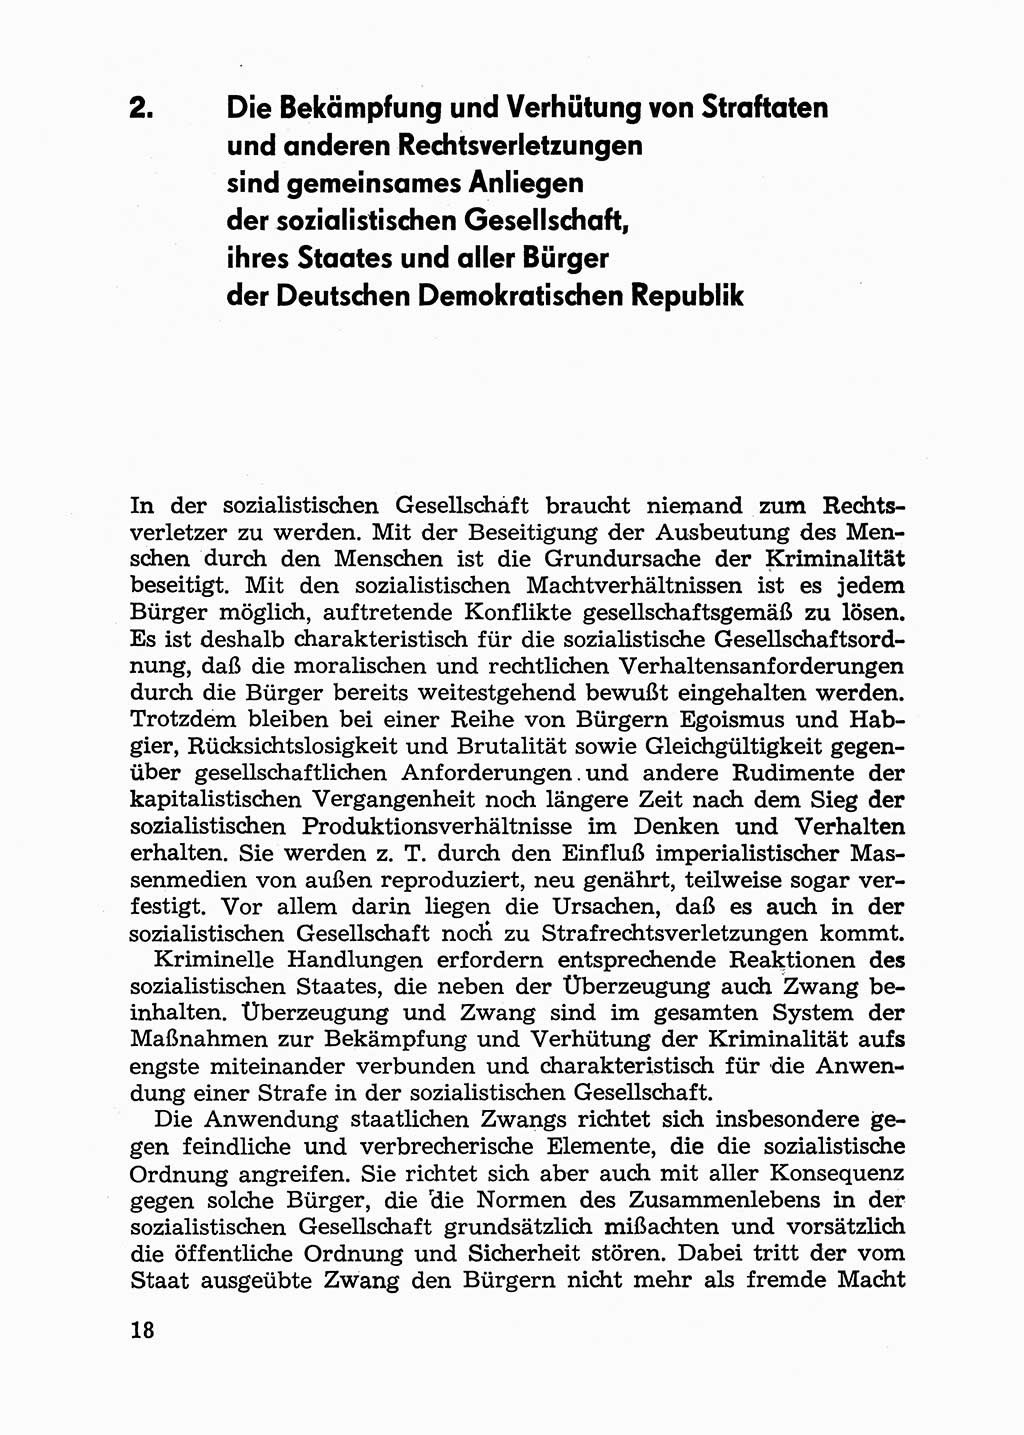 Handbuch für Betriebsangehörige, Abteilung Strafvollzug (SV) [Ministerium des Innern (MdI) Deutsche Demokratische Republik (DDR)] 1981, Seite 18 (Hb. BA Abt. SV MdI DDR 1981, S. 18)